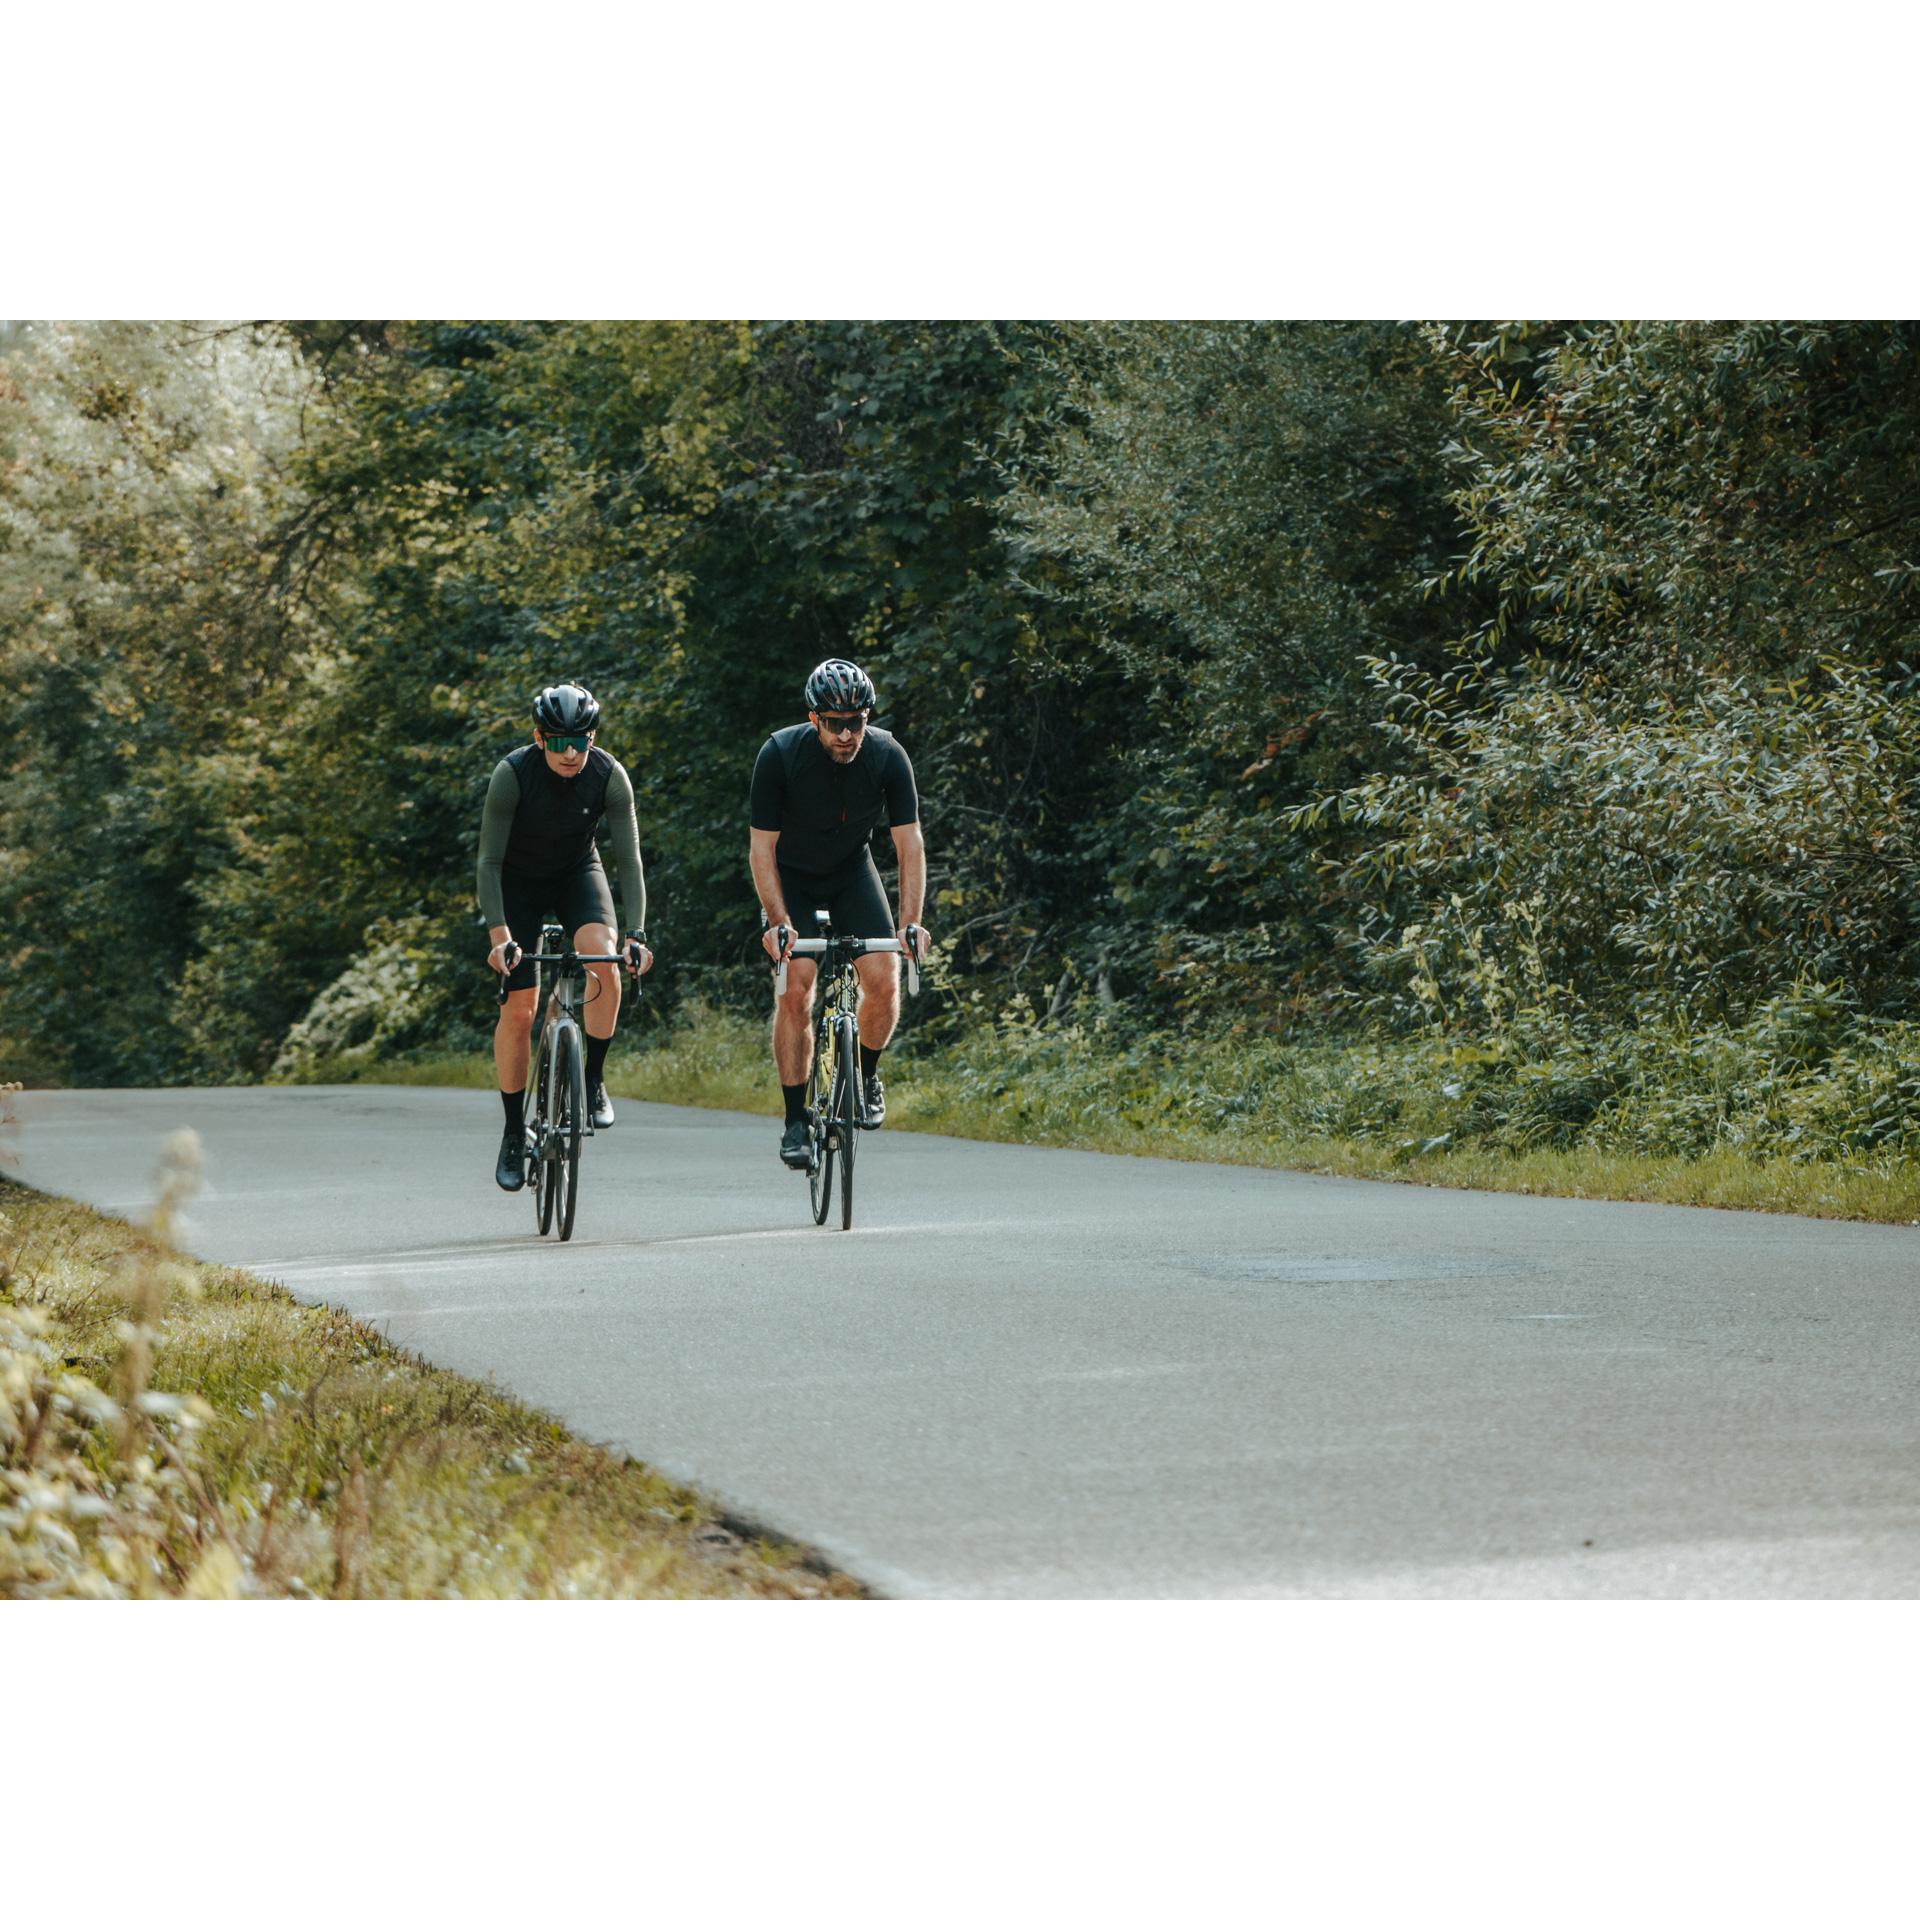 Dwóch rowerzystów w czarnych strojach kolarskich, ciemnych okularach i kaskach jadących na rowerach drogą asfaltową wśród zielonych drzew i krzewów